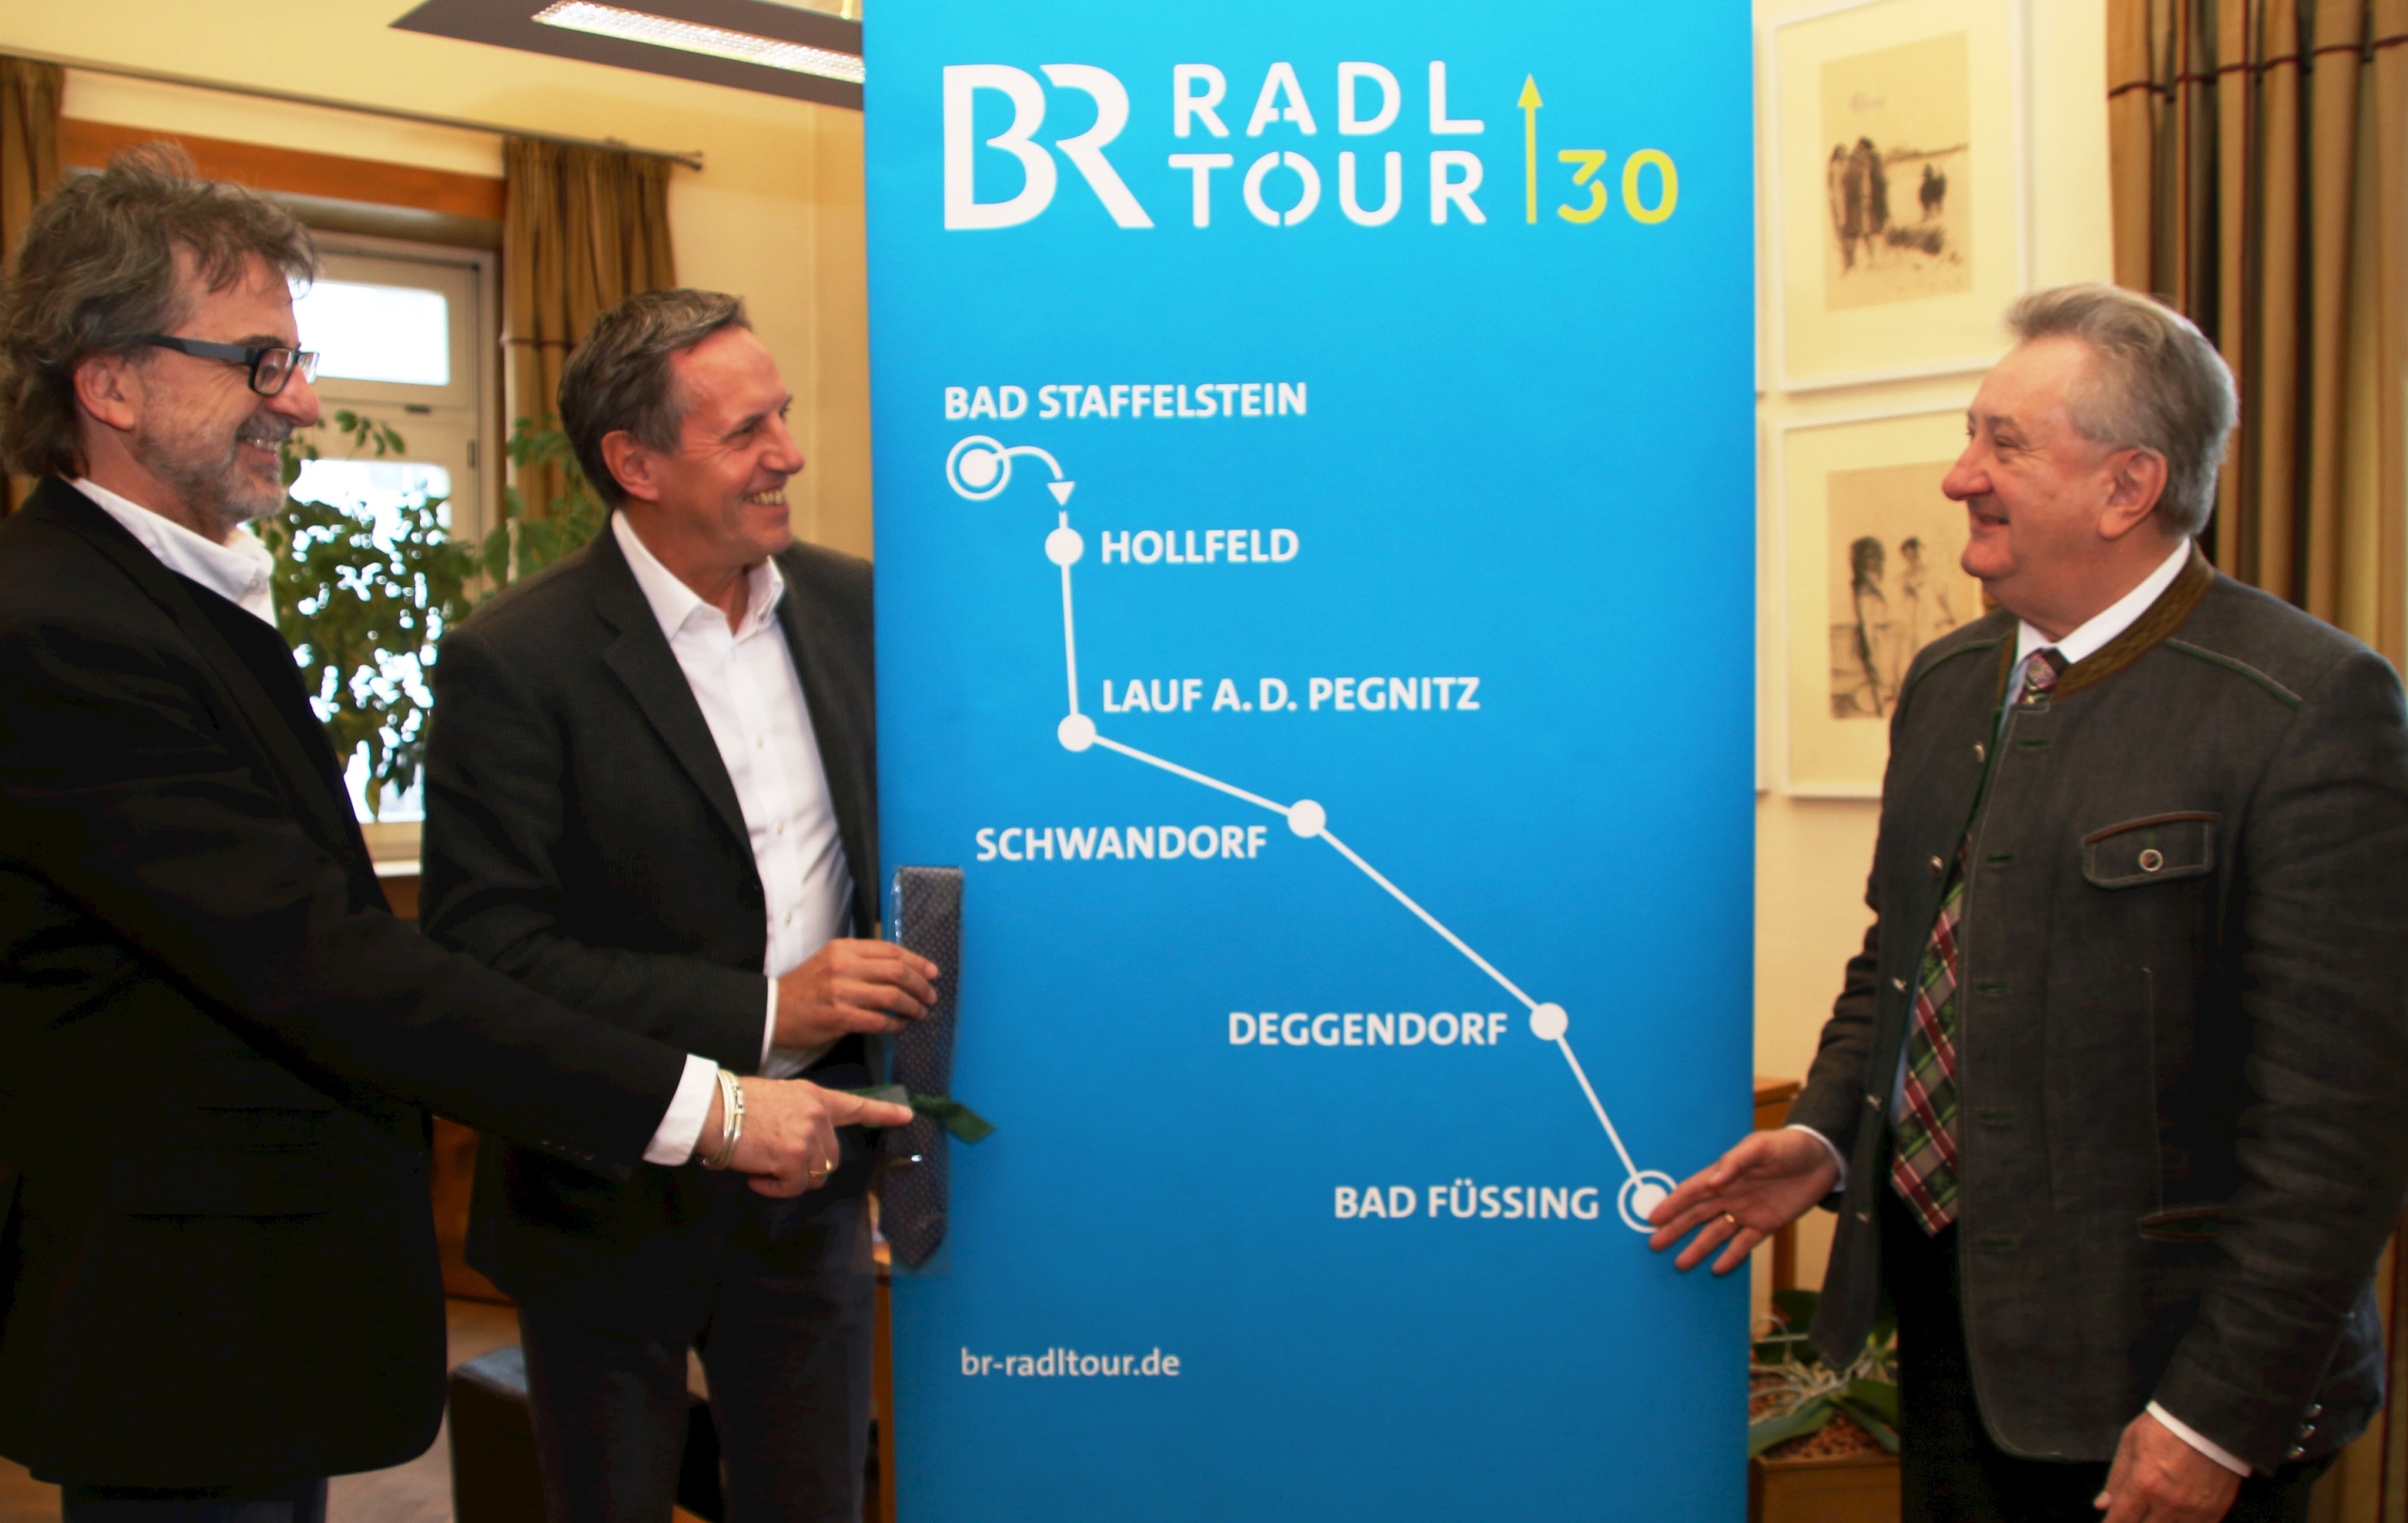 BR-Radltour zu Gast im Passauer Land